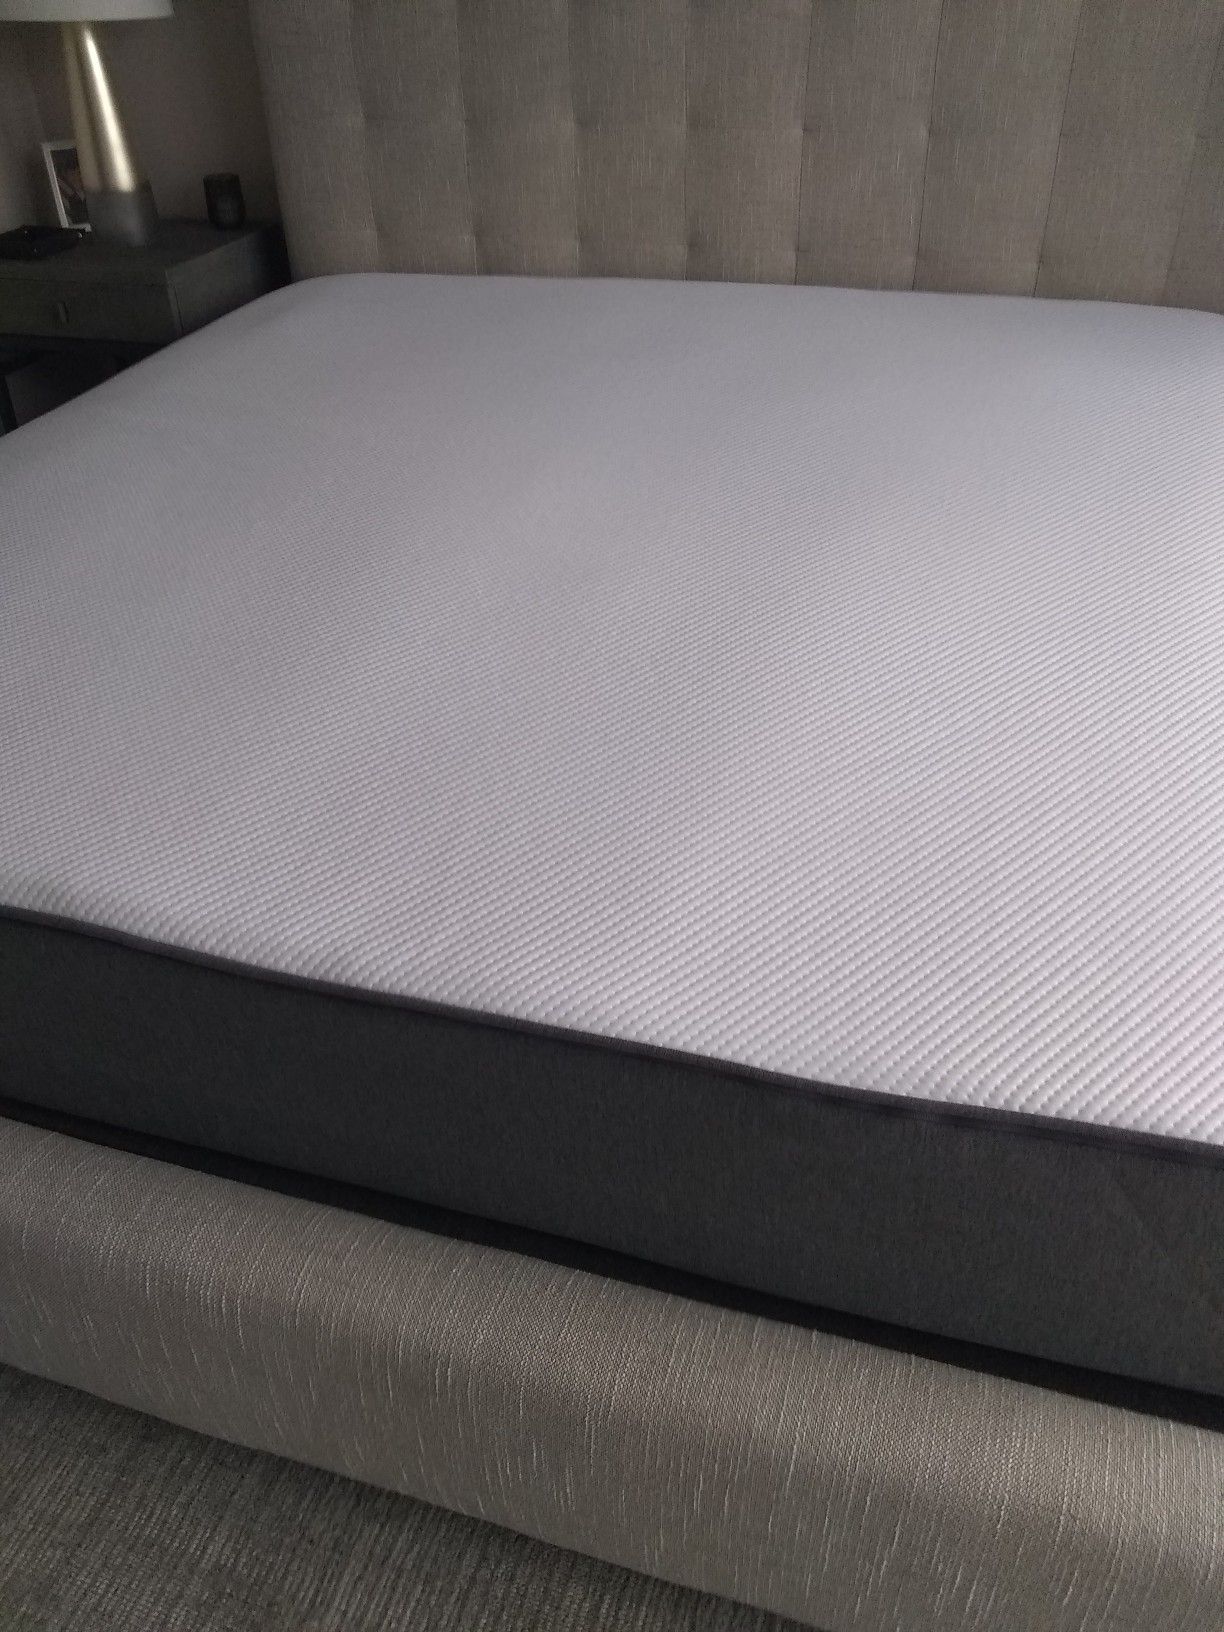 New king size Casper mattress only